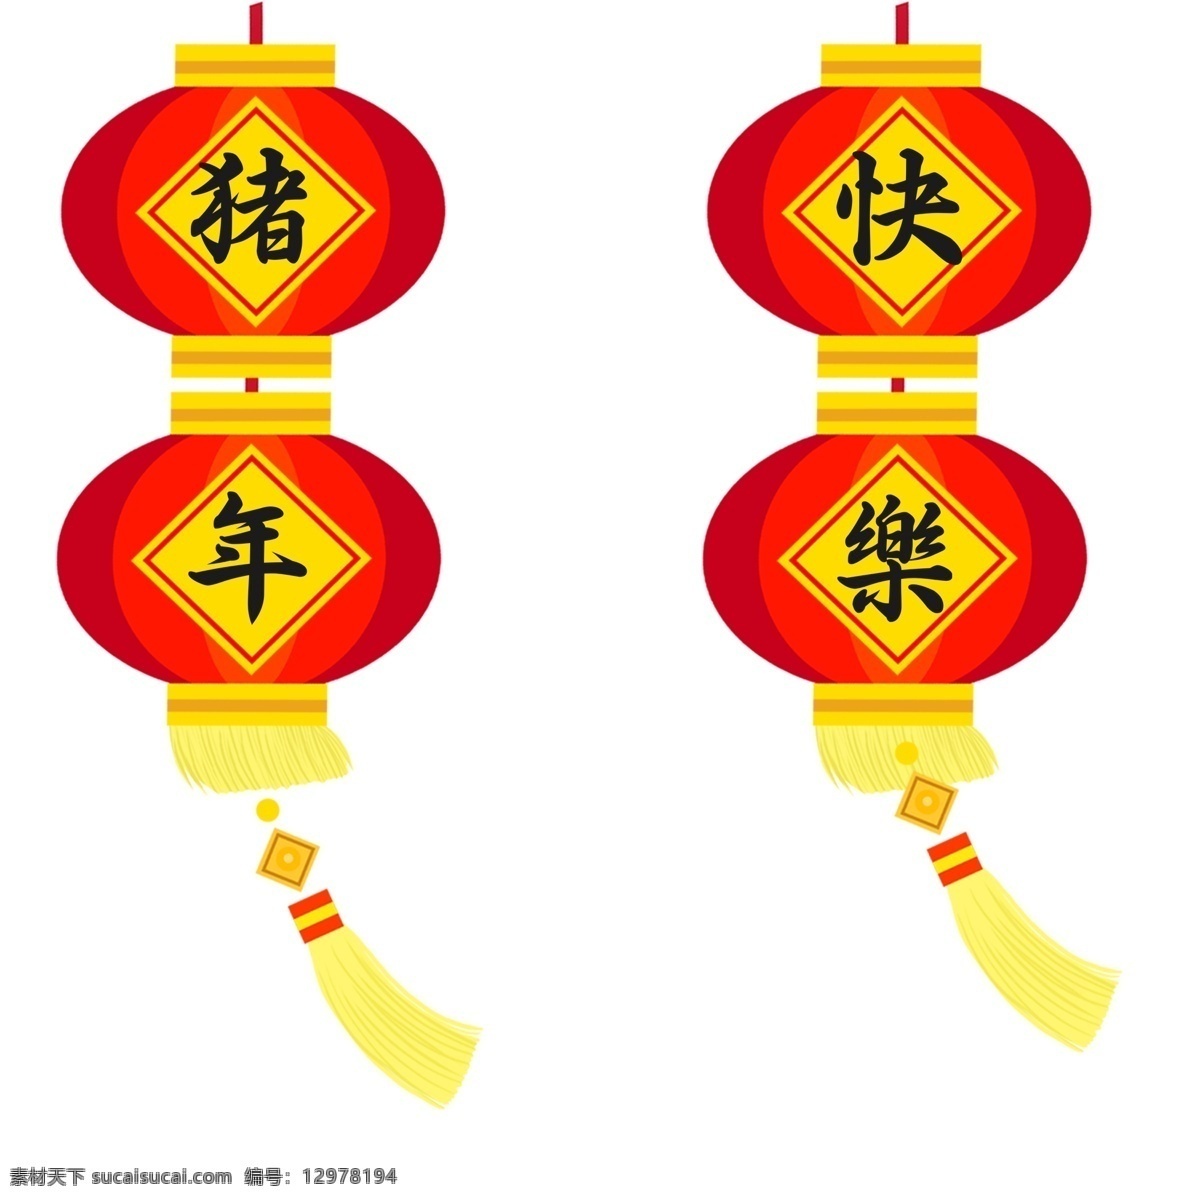 春节 新年 快乐 灯笼 红色 喜庆 中国风 春节元素 卡通元素 猪年快乐 灯笼元素